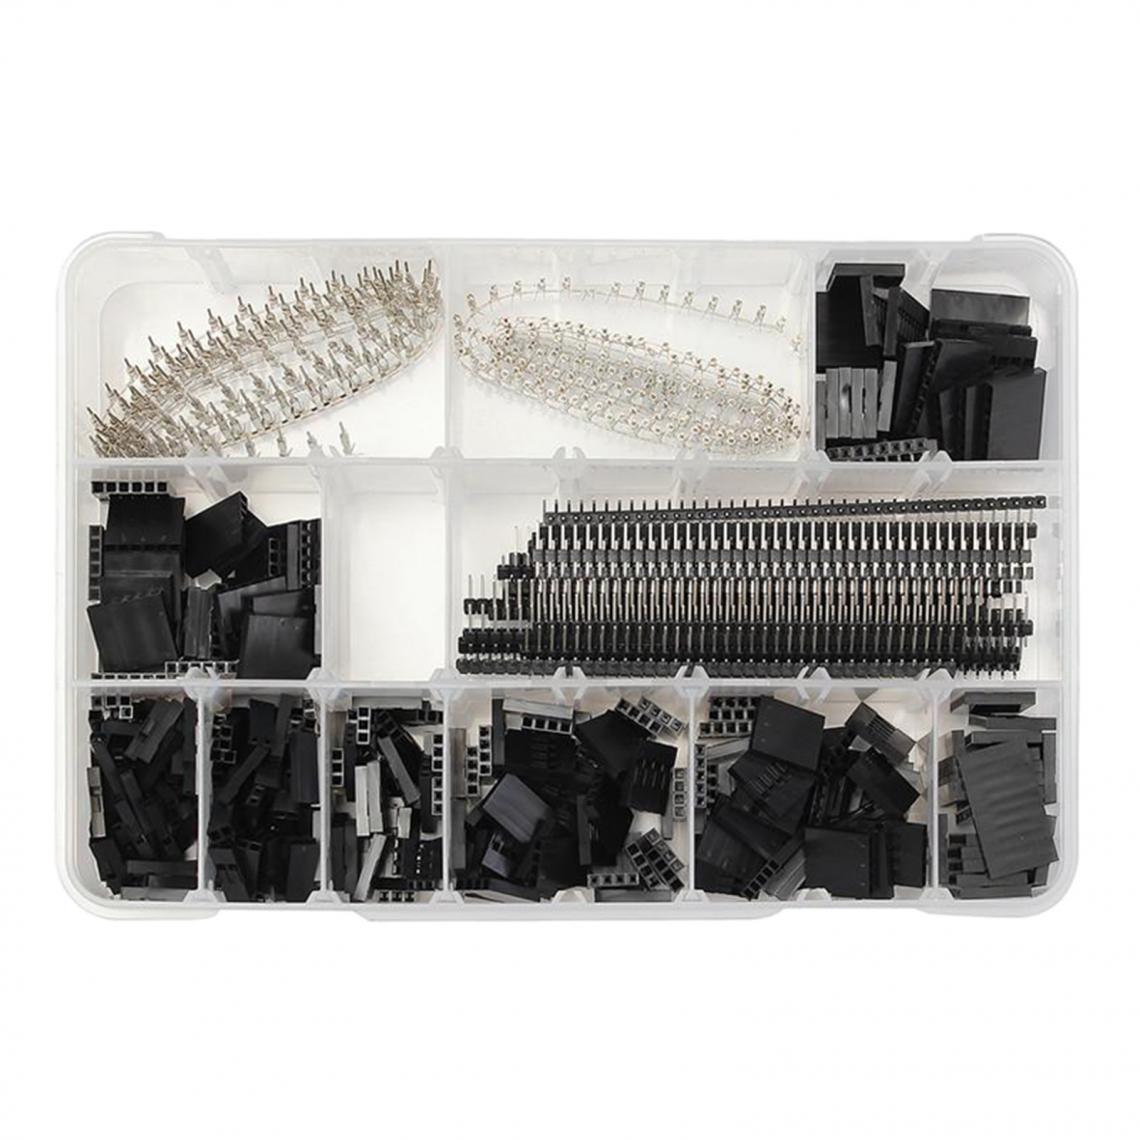 marque generique - Pack de 1450 Dupont Connecteur Kit Adaptateur Assortiment dans Boîte Transparente Pièces, interne Pur Cuivre et la Surface Revêtement Antioxydant - Appareils de mesure